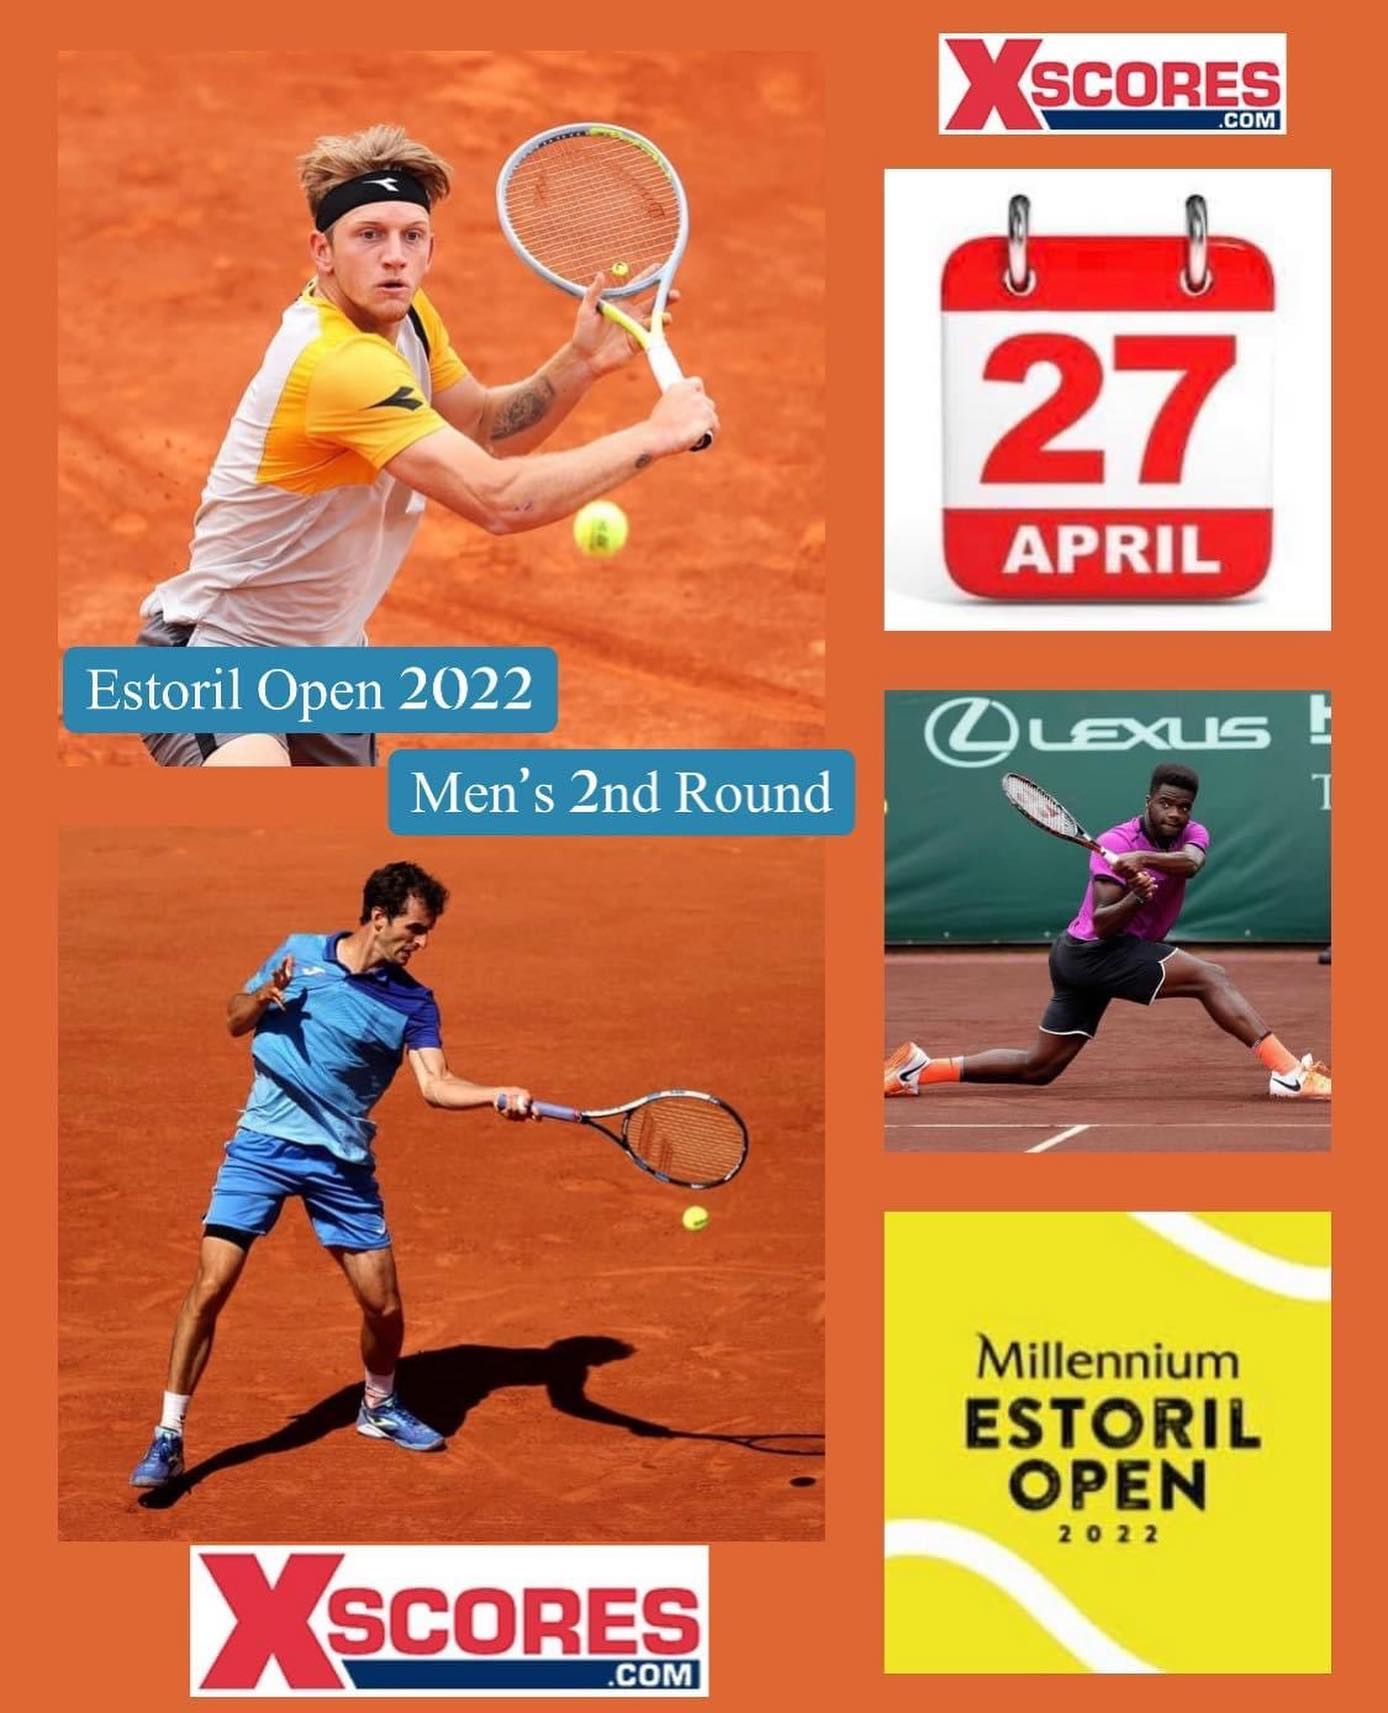 🎾🎾Tennis- ATP Tour 250 – Surface Outdoor Clay – Millennium Estoril Open, Estoril, Portugal.🎾🎾